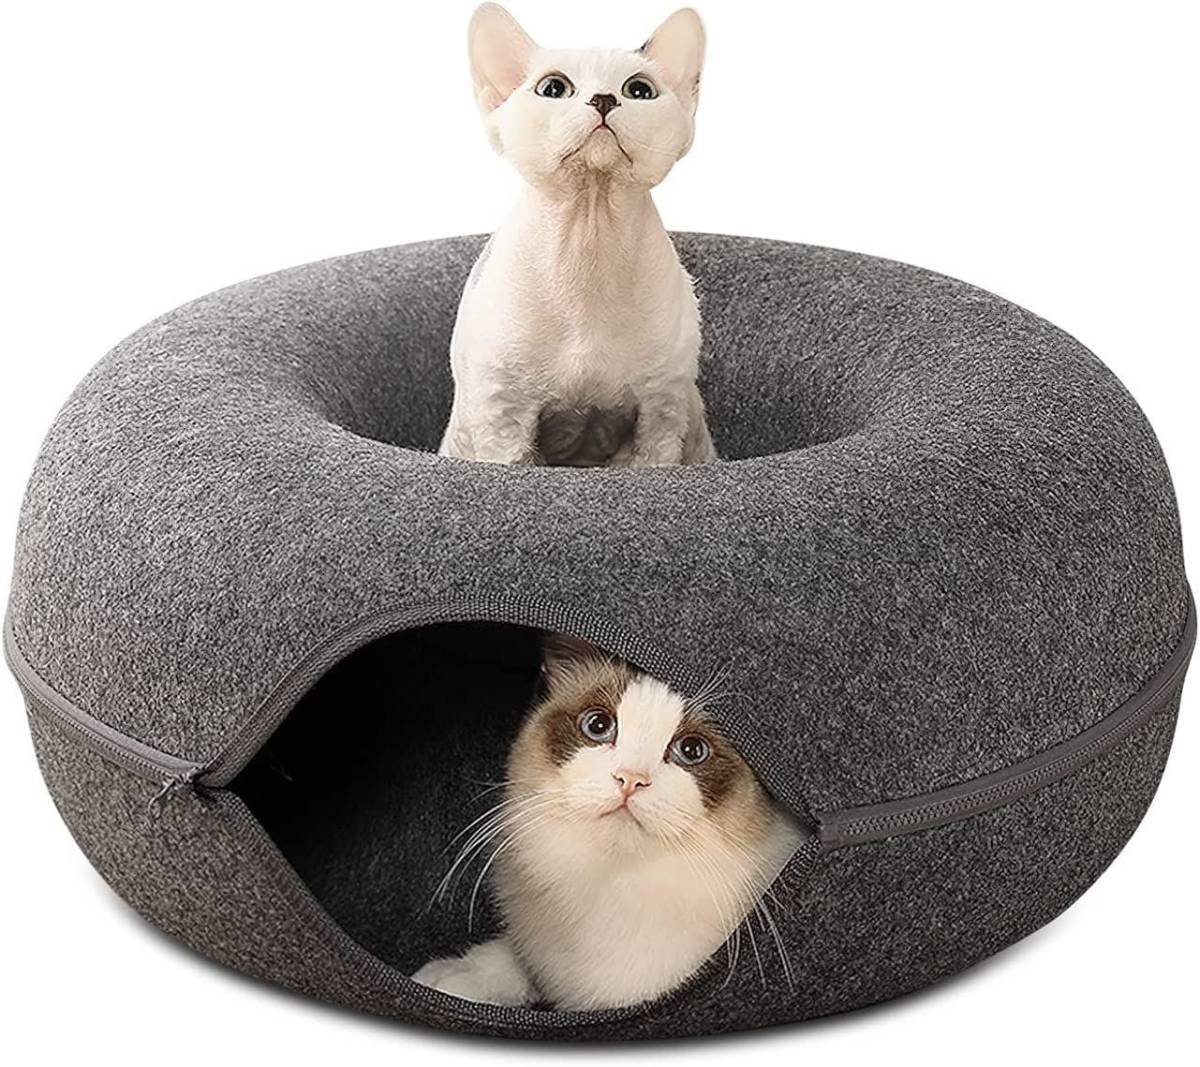  кошка пончики кошка пончики кошка для bed кошка тоннель удален возможность ... кошка для bed закрытый для кошка тоннель товары для домашних животных bed кошка для 